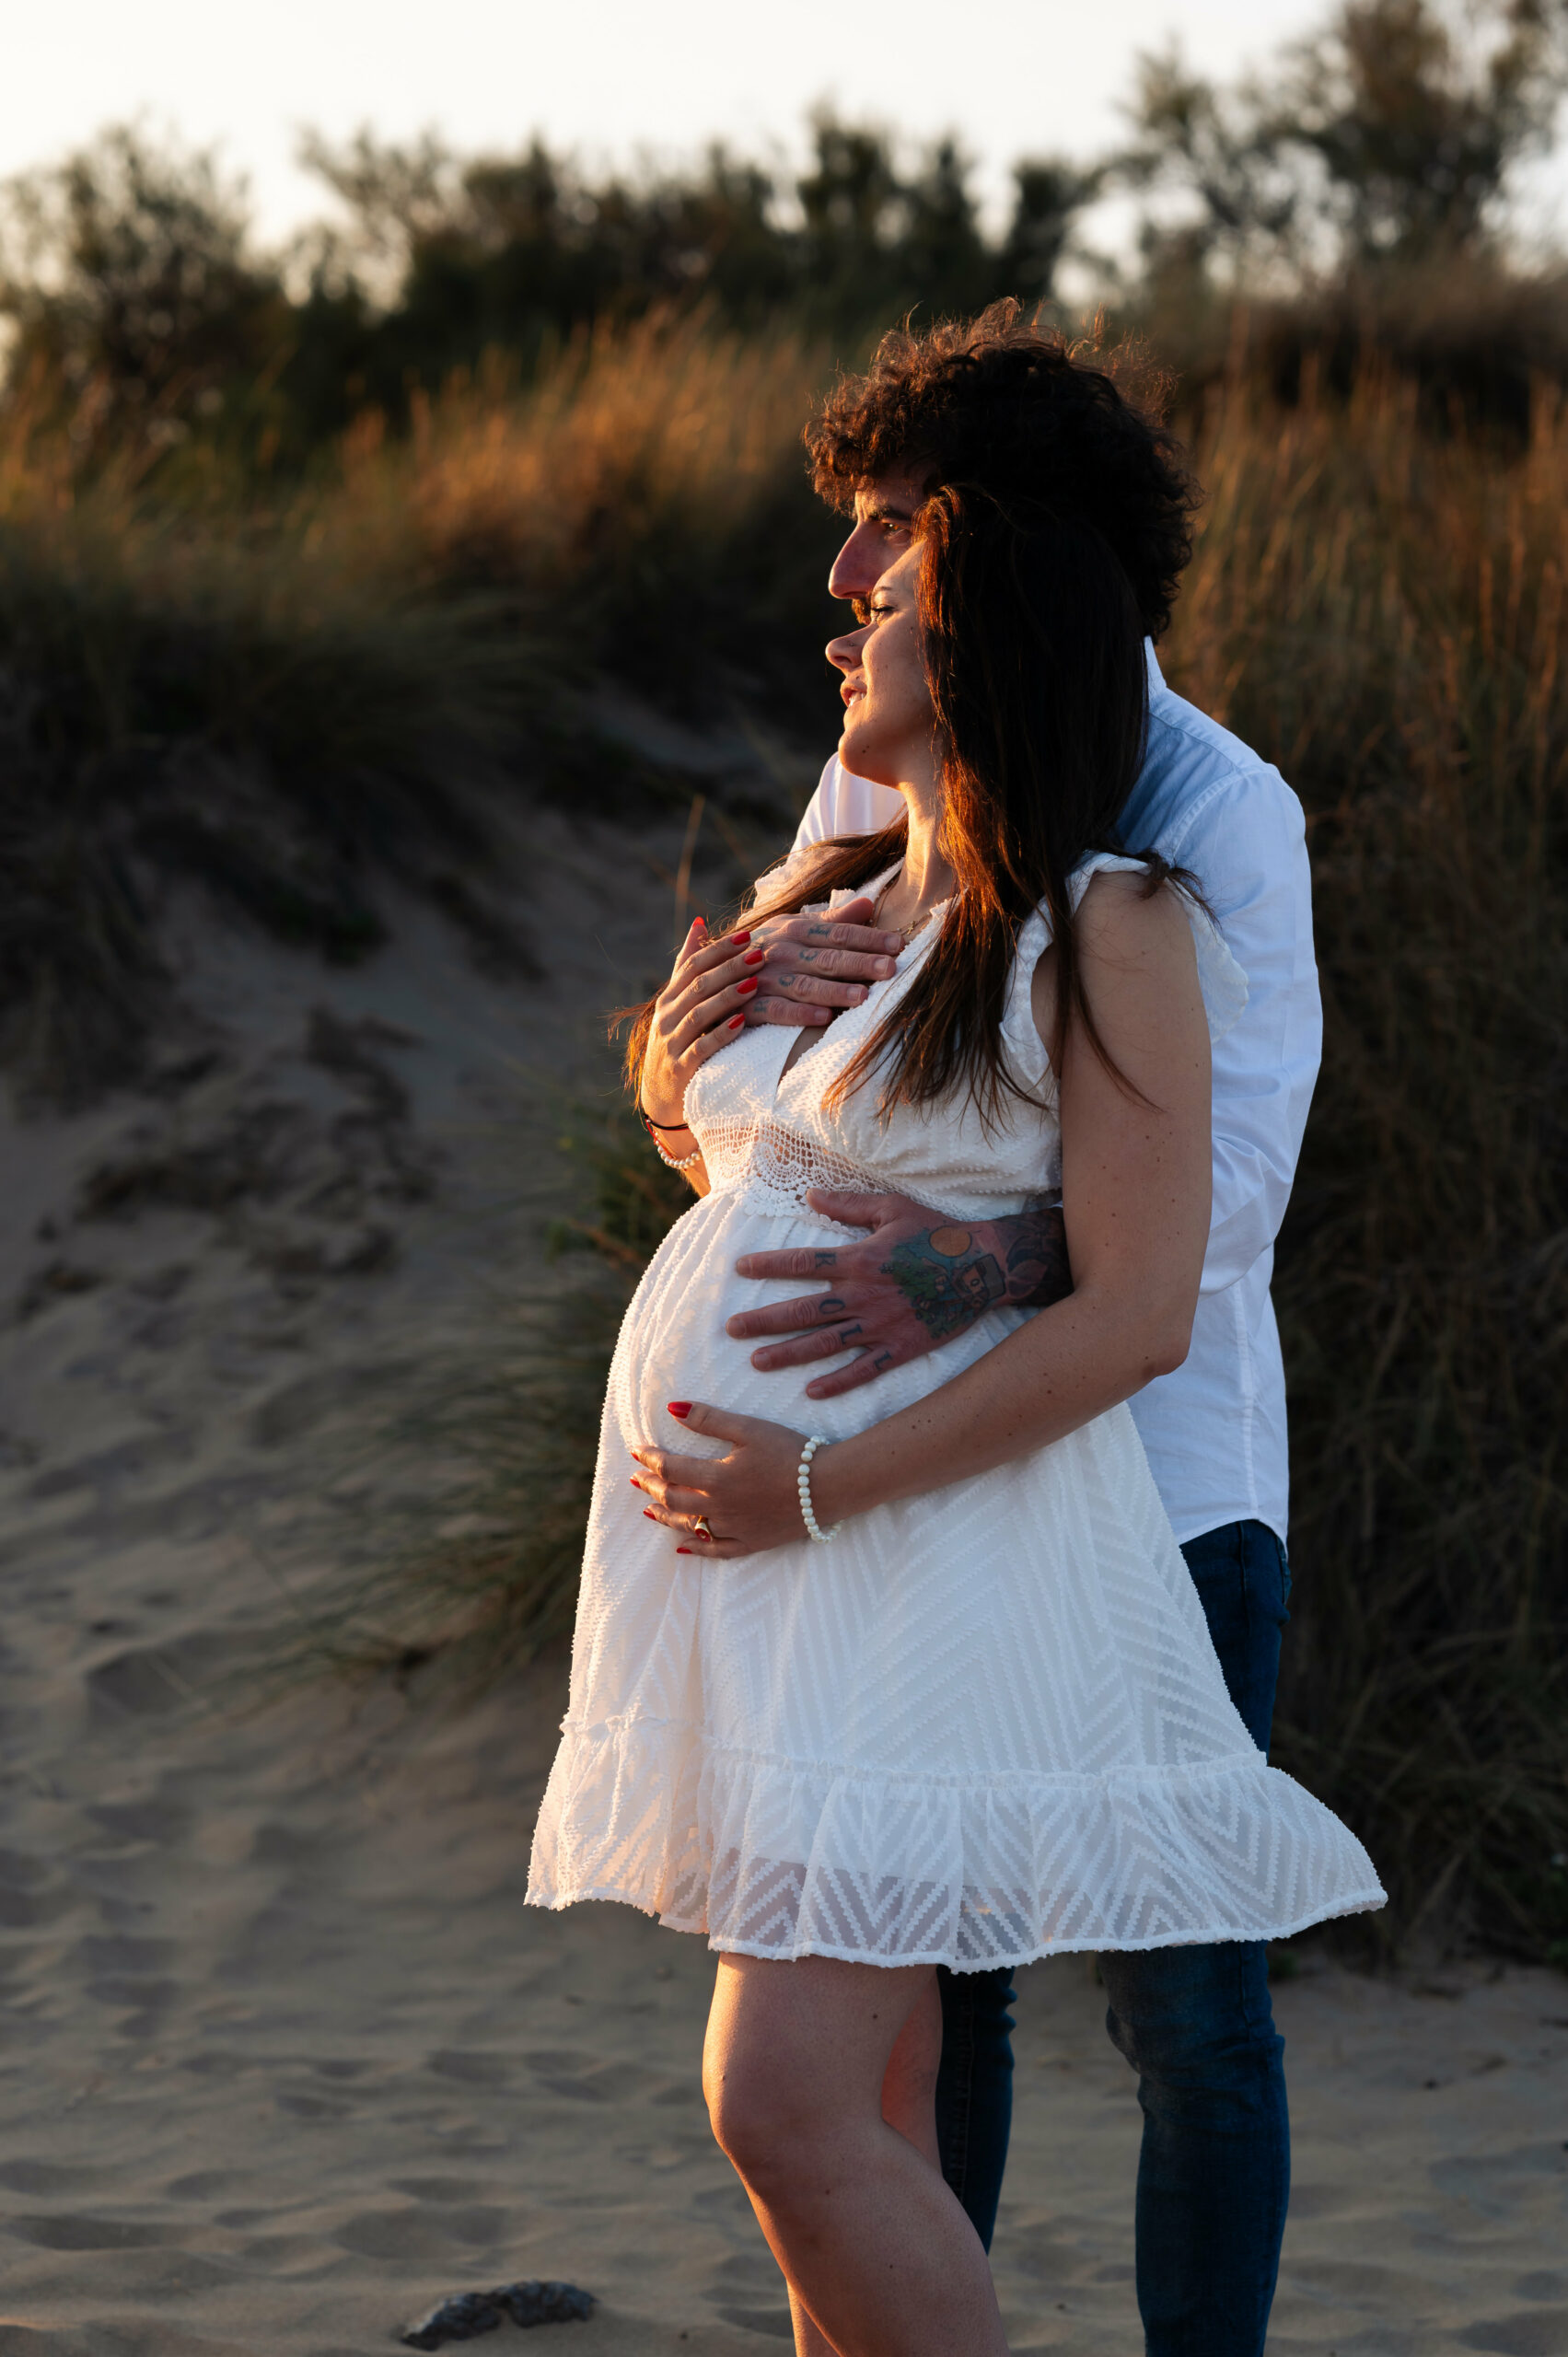 séance photo grossesse à la plage narbonne - photographe narbonne - lonowai photographie